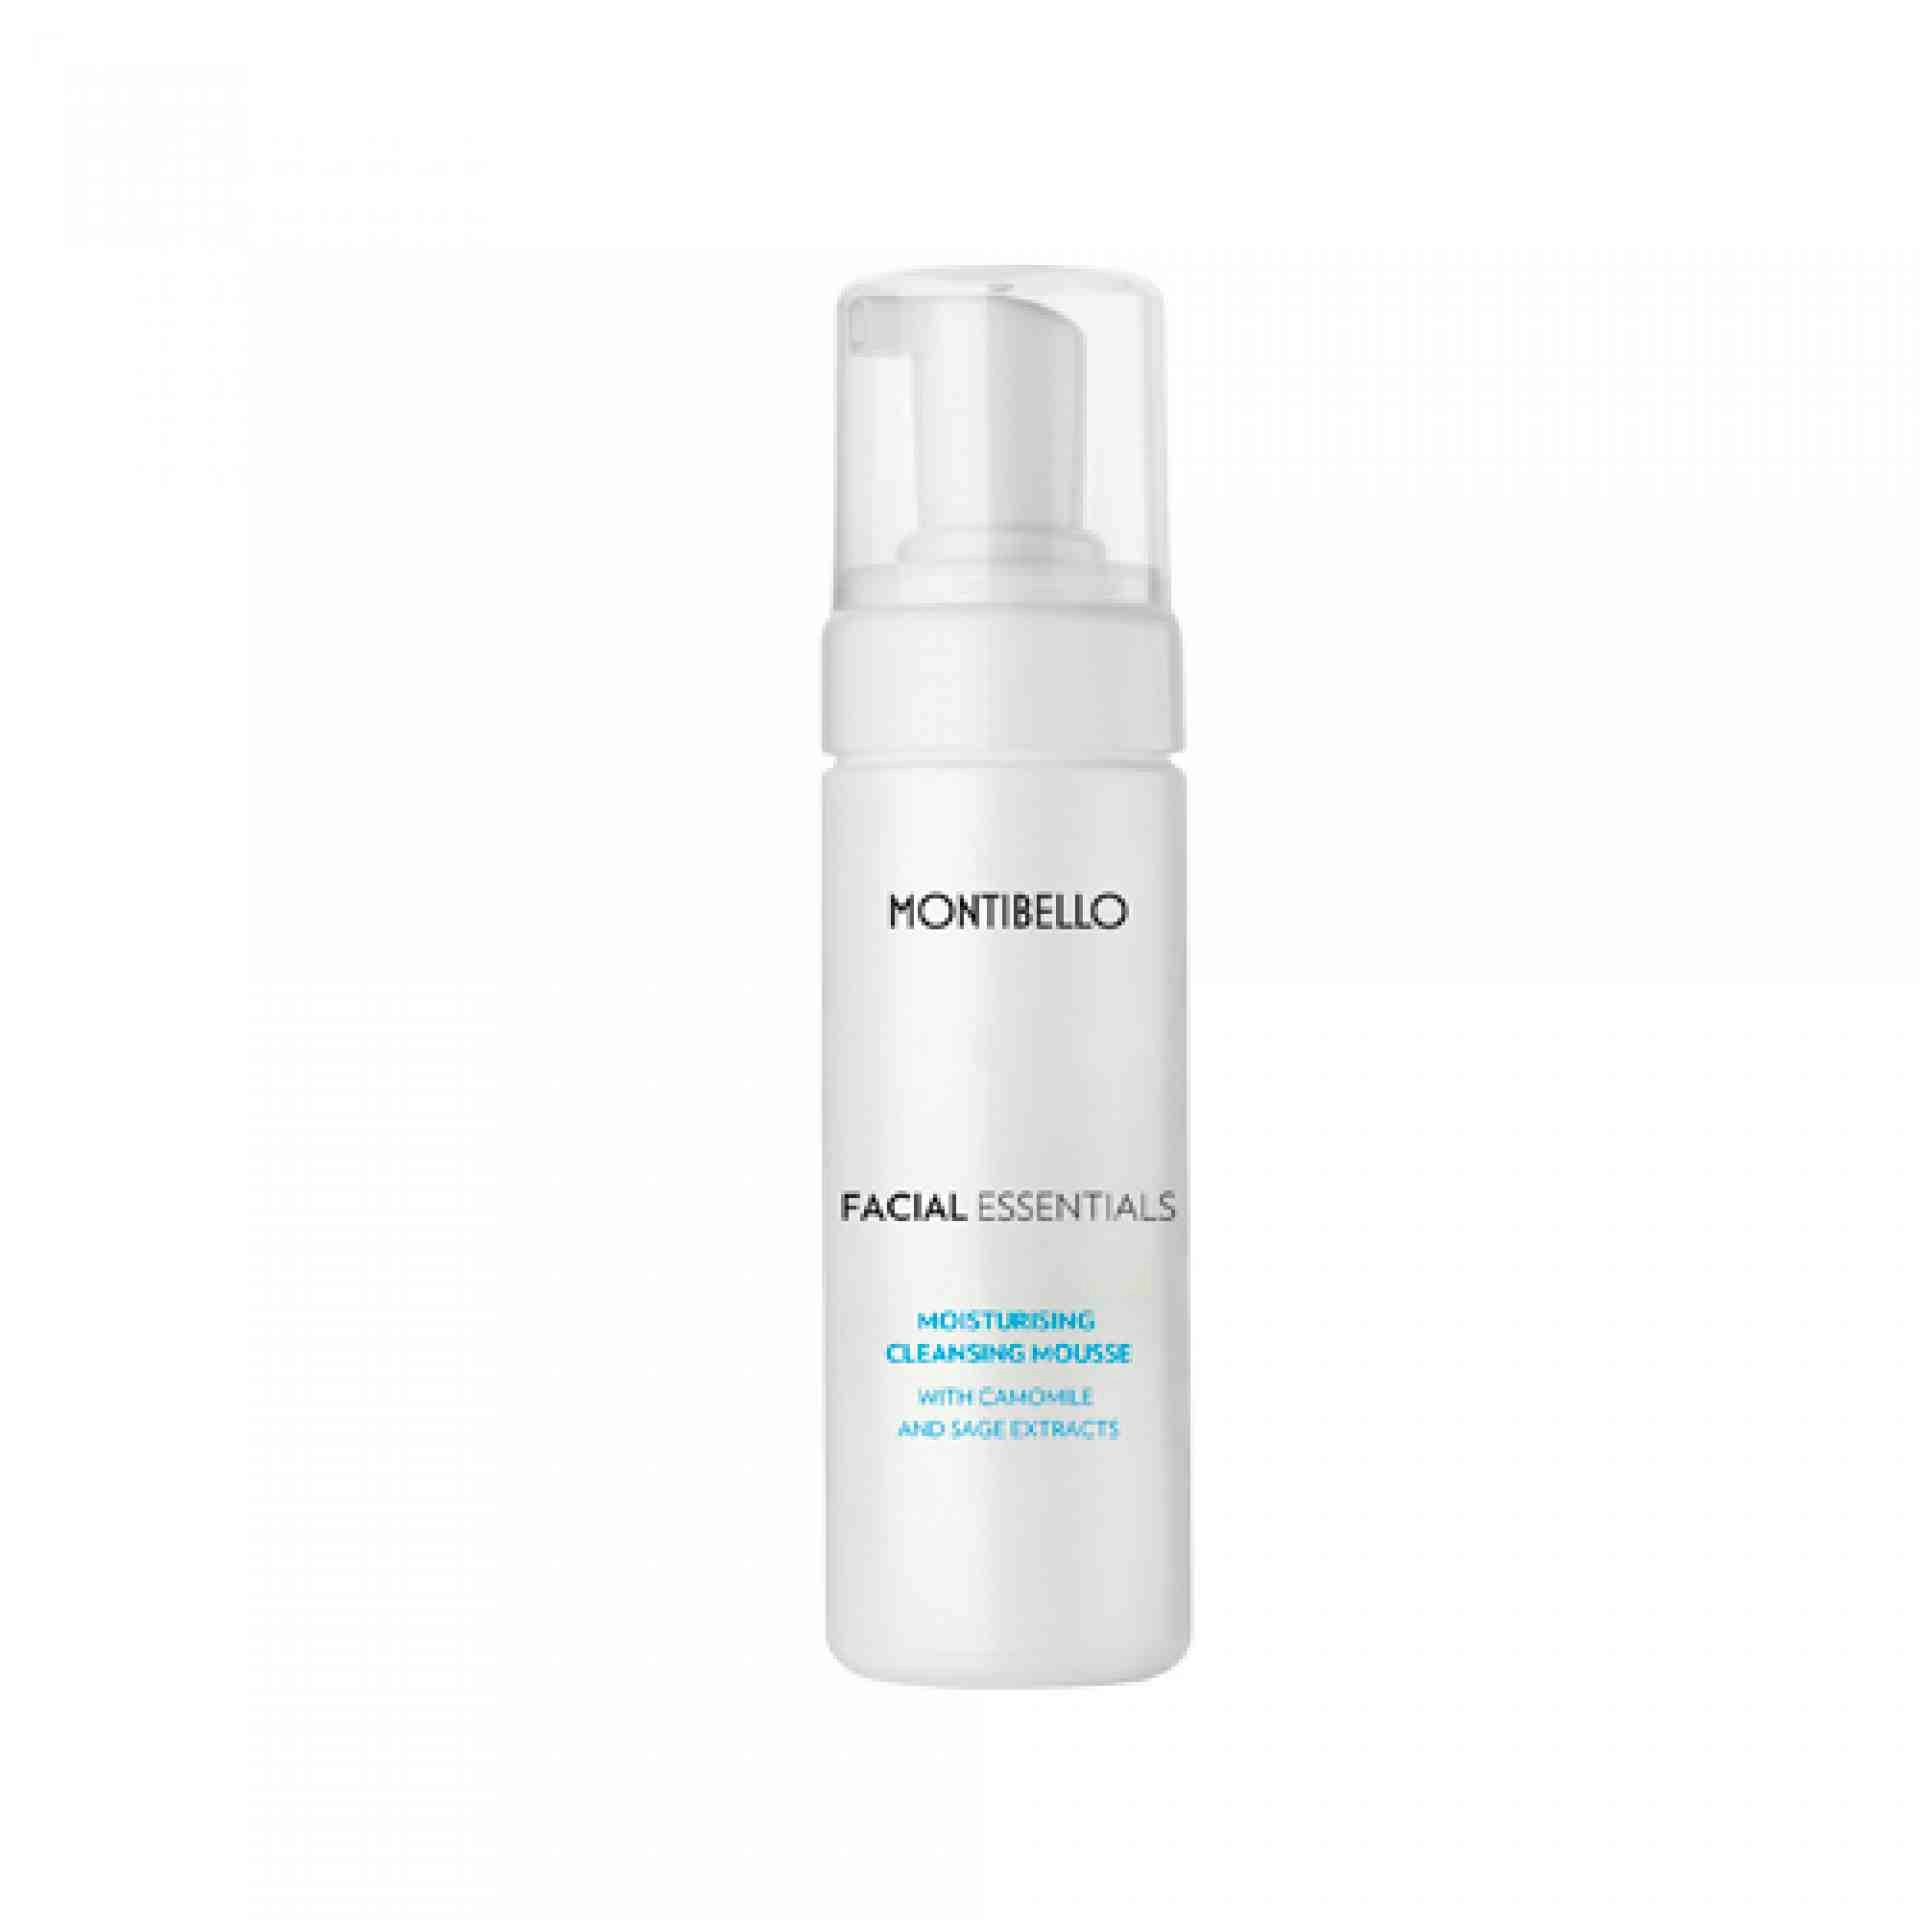 Moisturising Cleansing Mousse | Espuma Limpiadora 150 ml - Facial Essentiales - Montibello ®